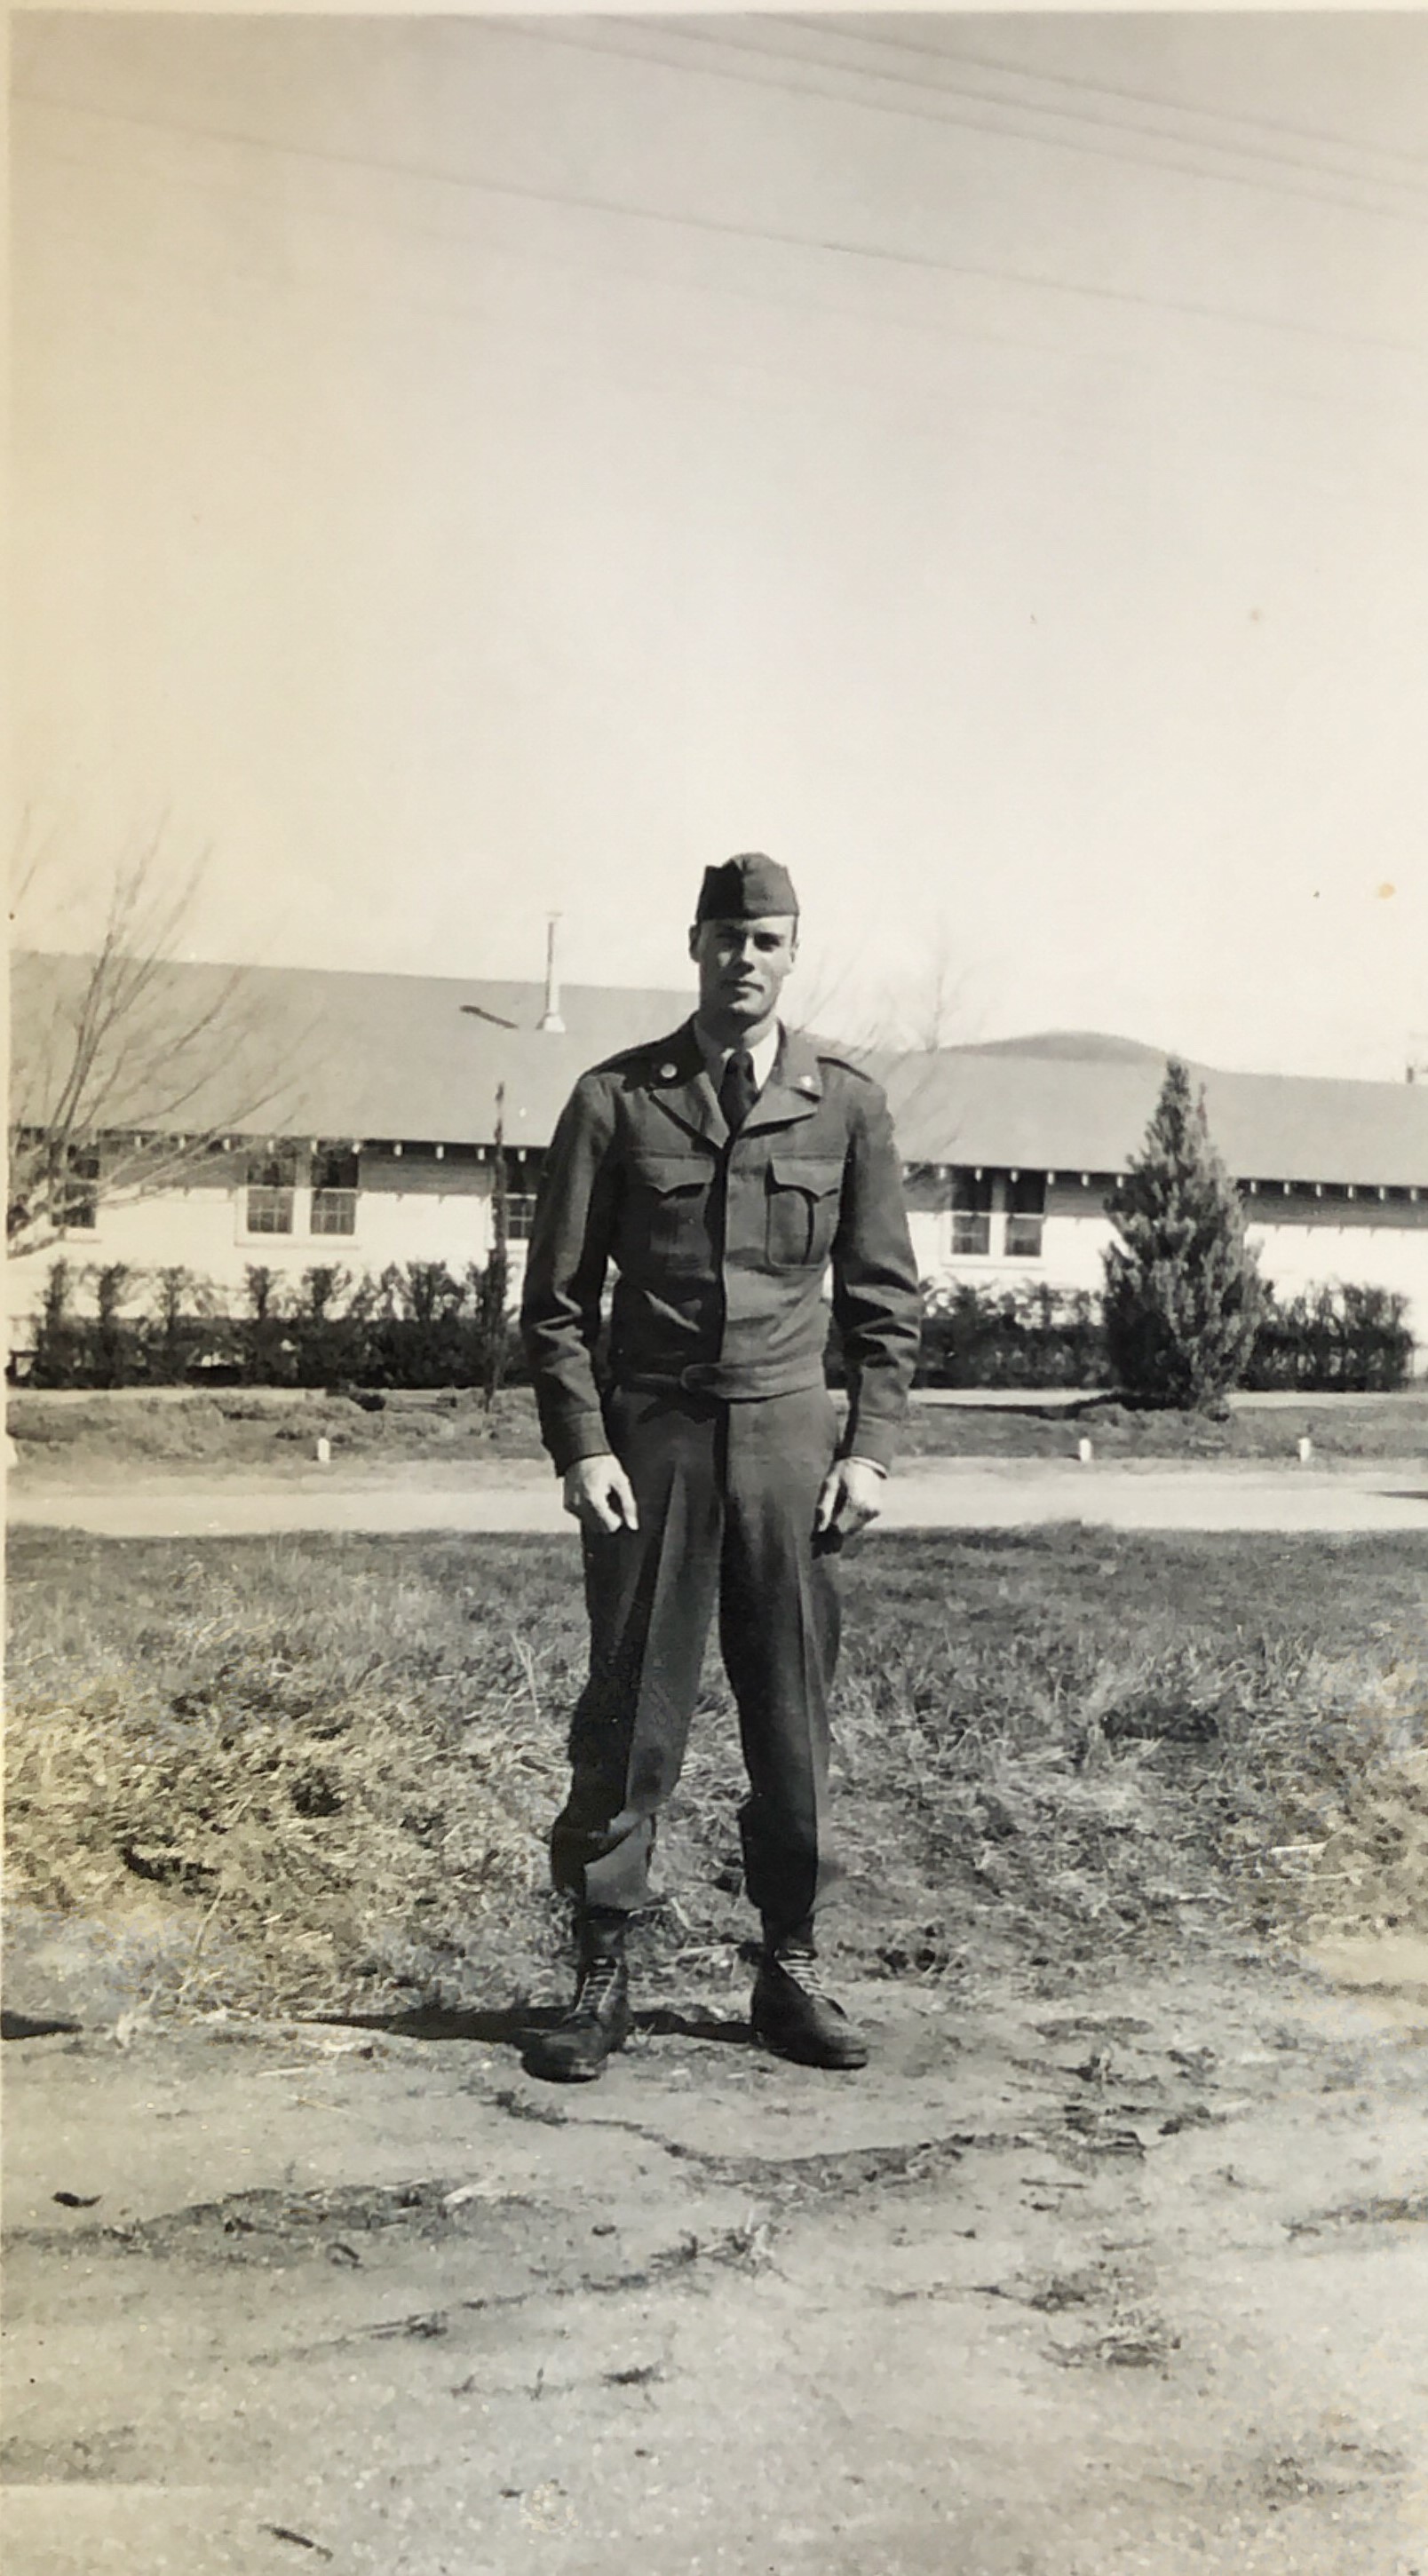  Bob at Camp Roberts, Calif., 1951-1952 